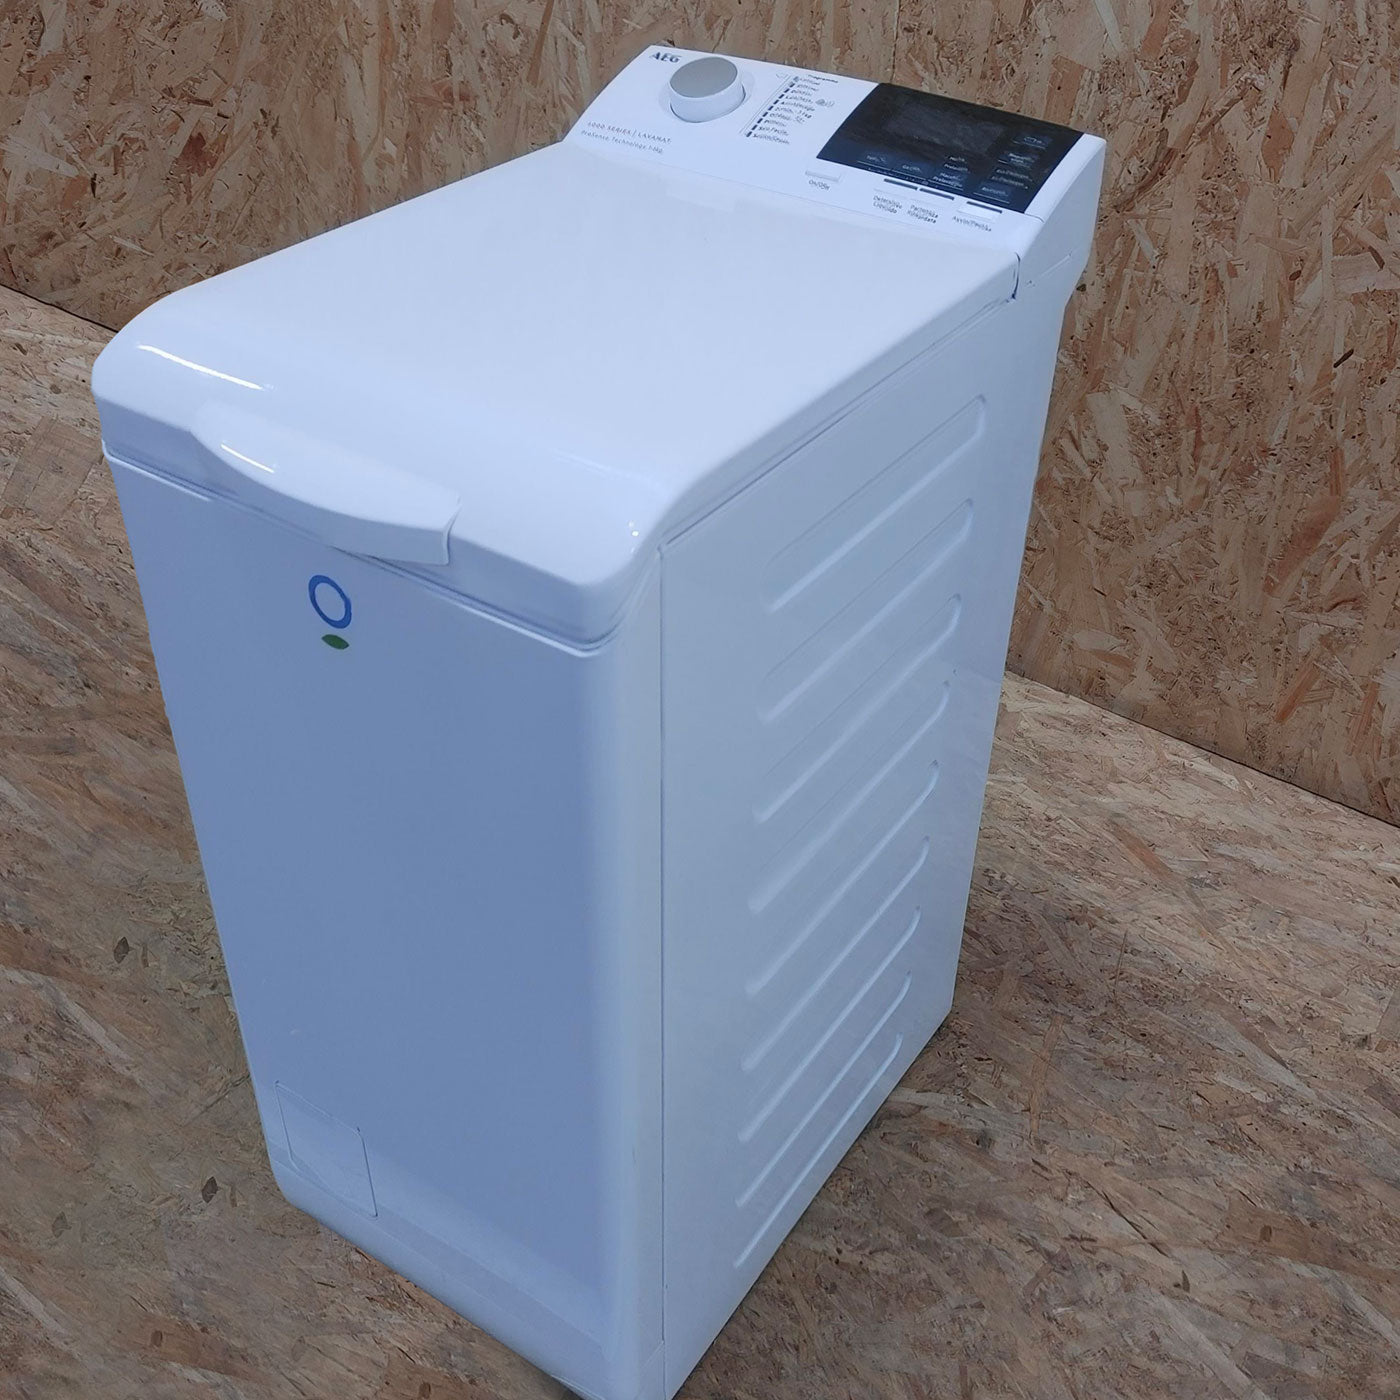 AEG L6TBG621 lavatrice Caricamento dall'alto 6 kg 1200 Giri/min F Bianco